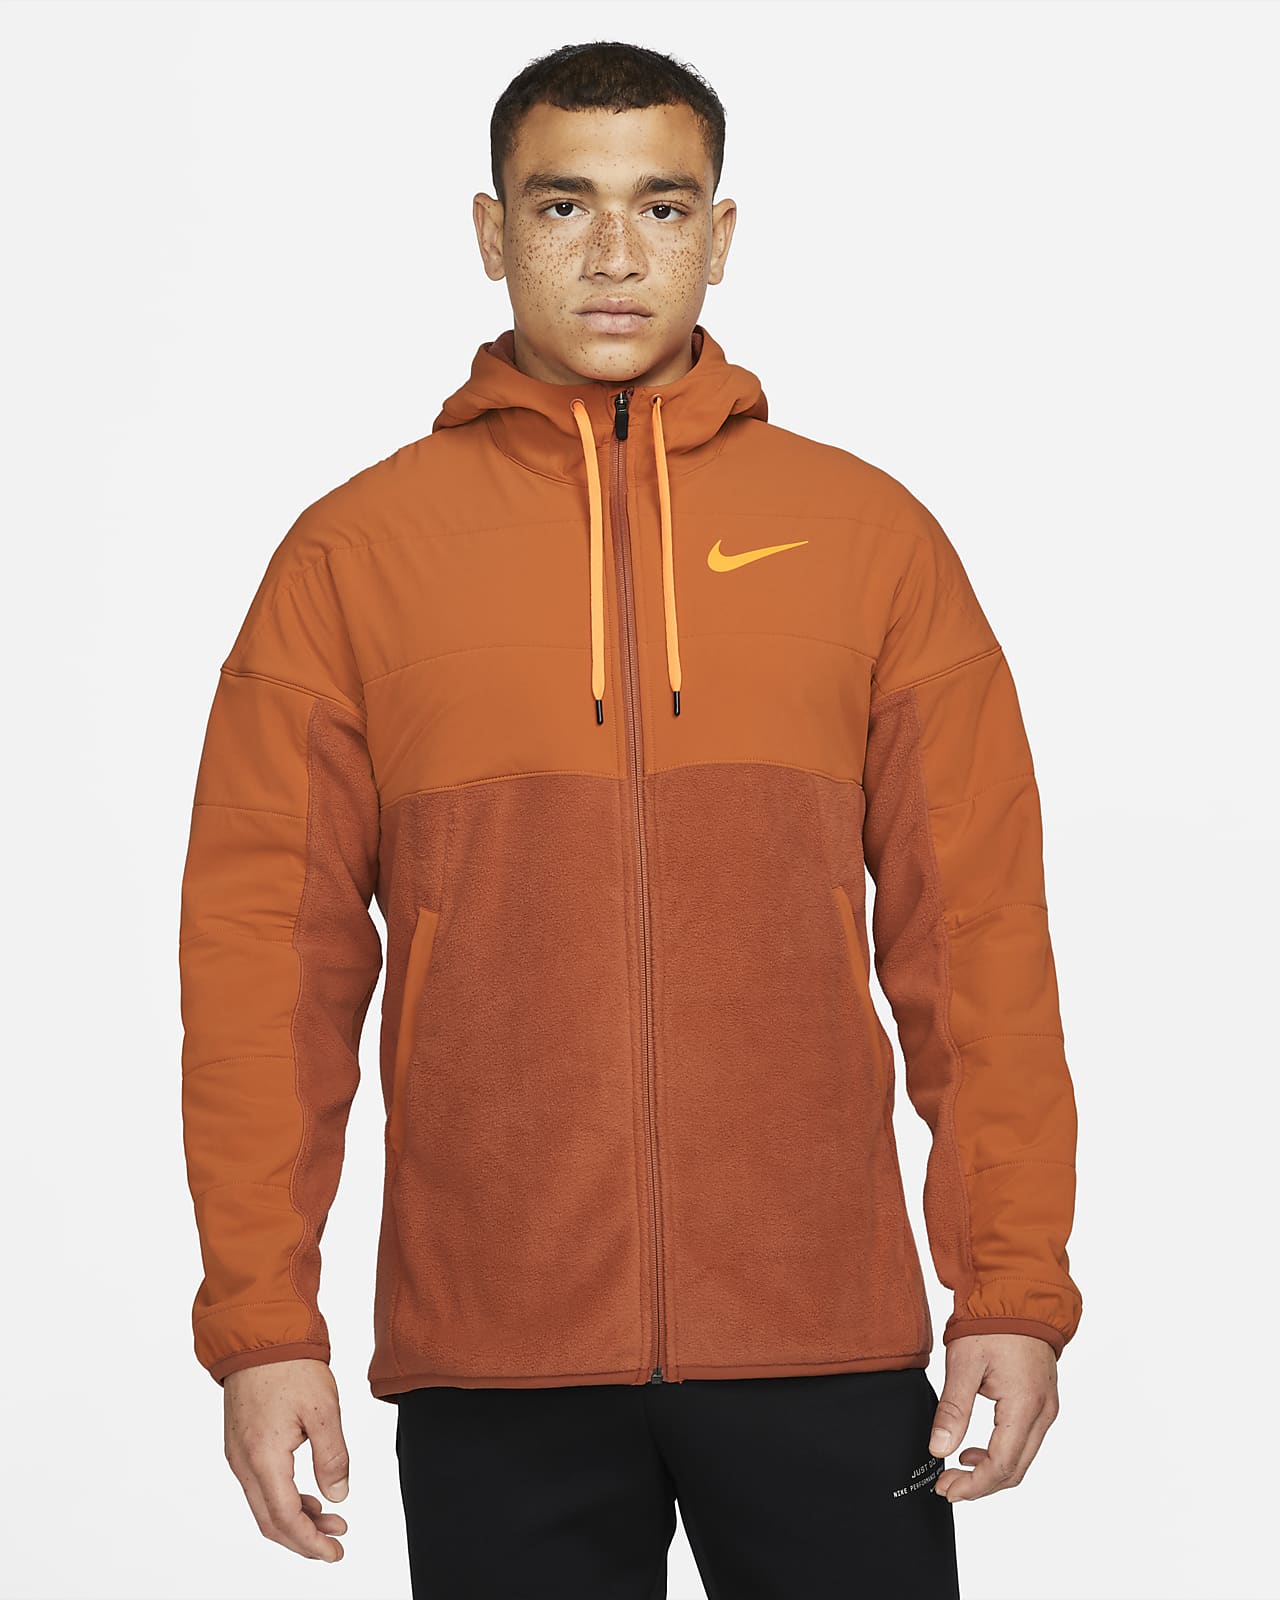 Nike Therma-FIT Sudadera con capucha de entrenamiento con cremallera completa para el invierno - Hombre